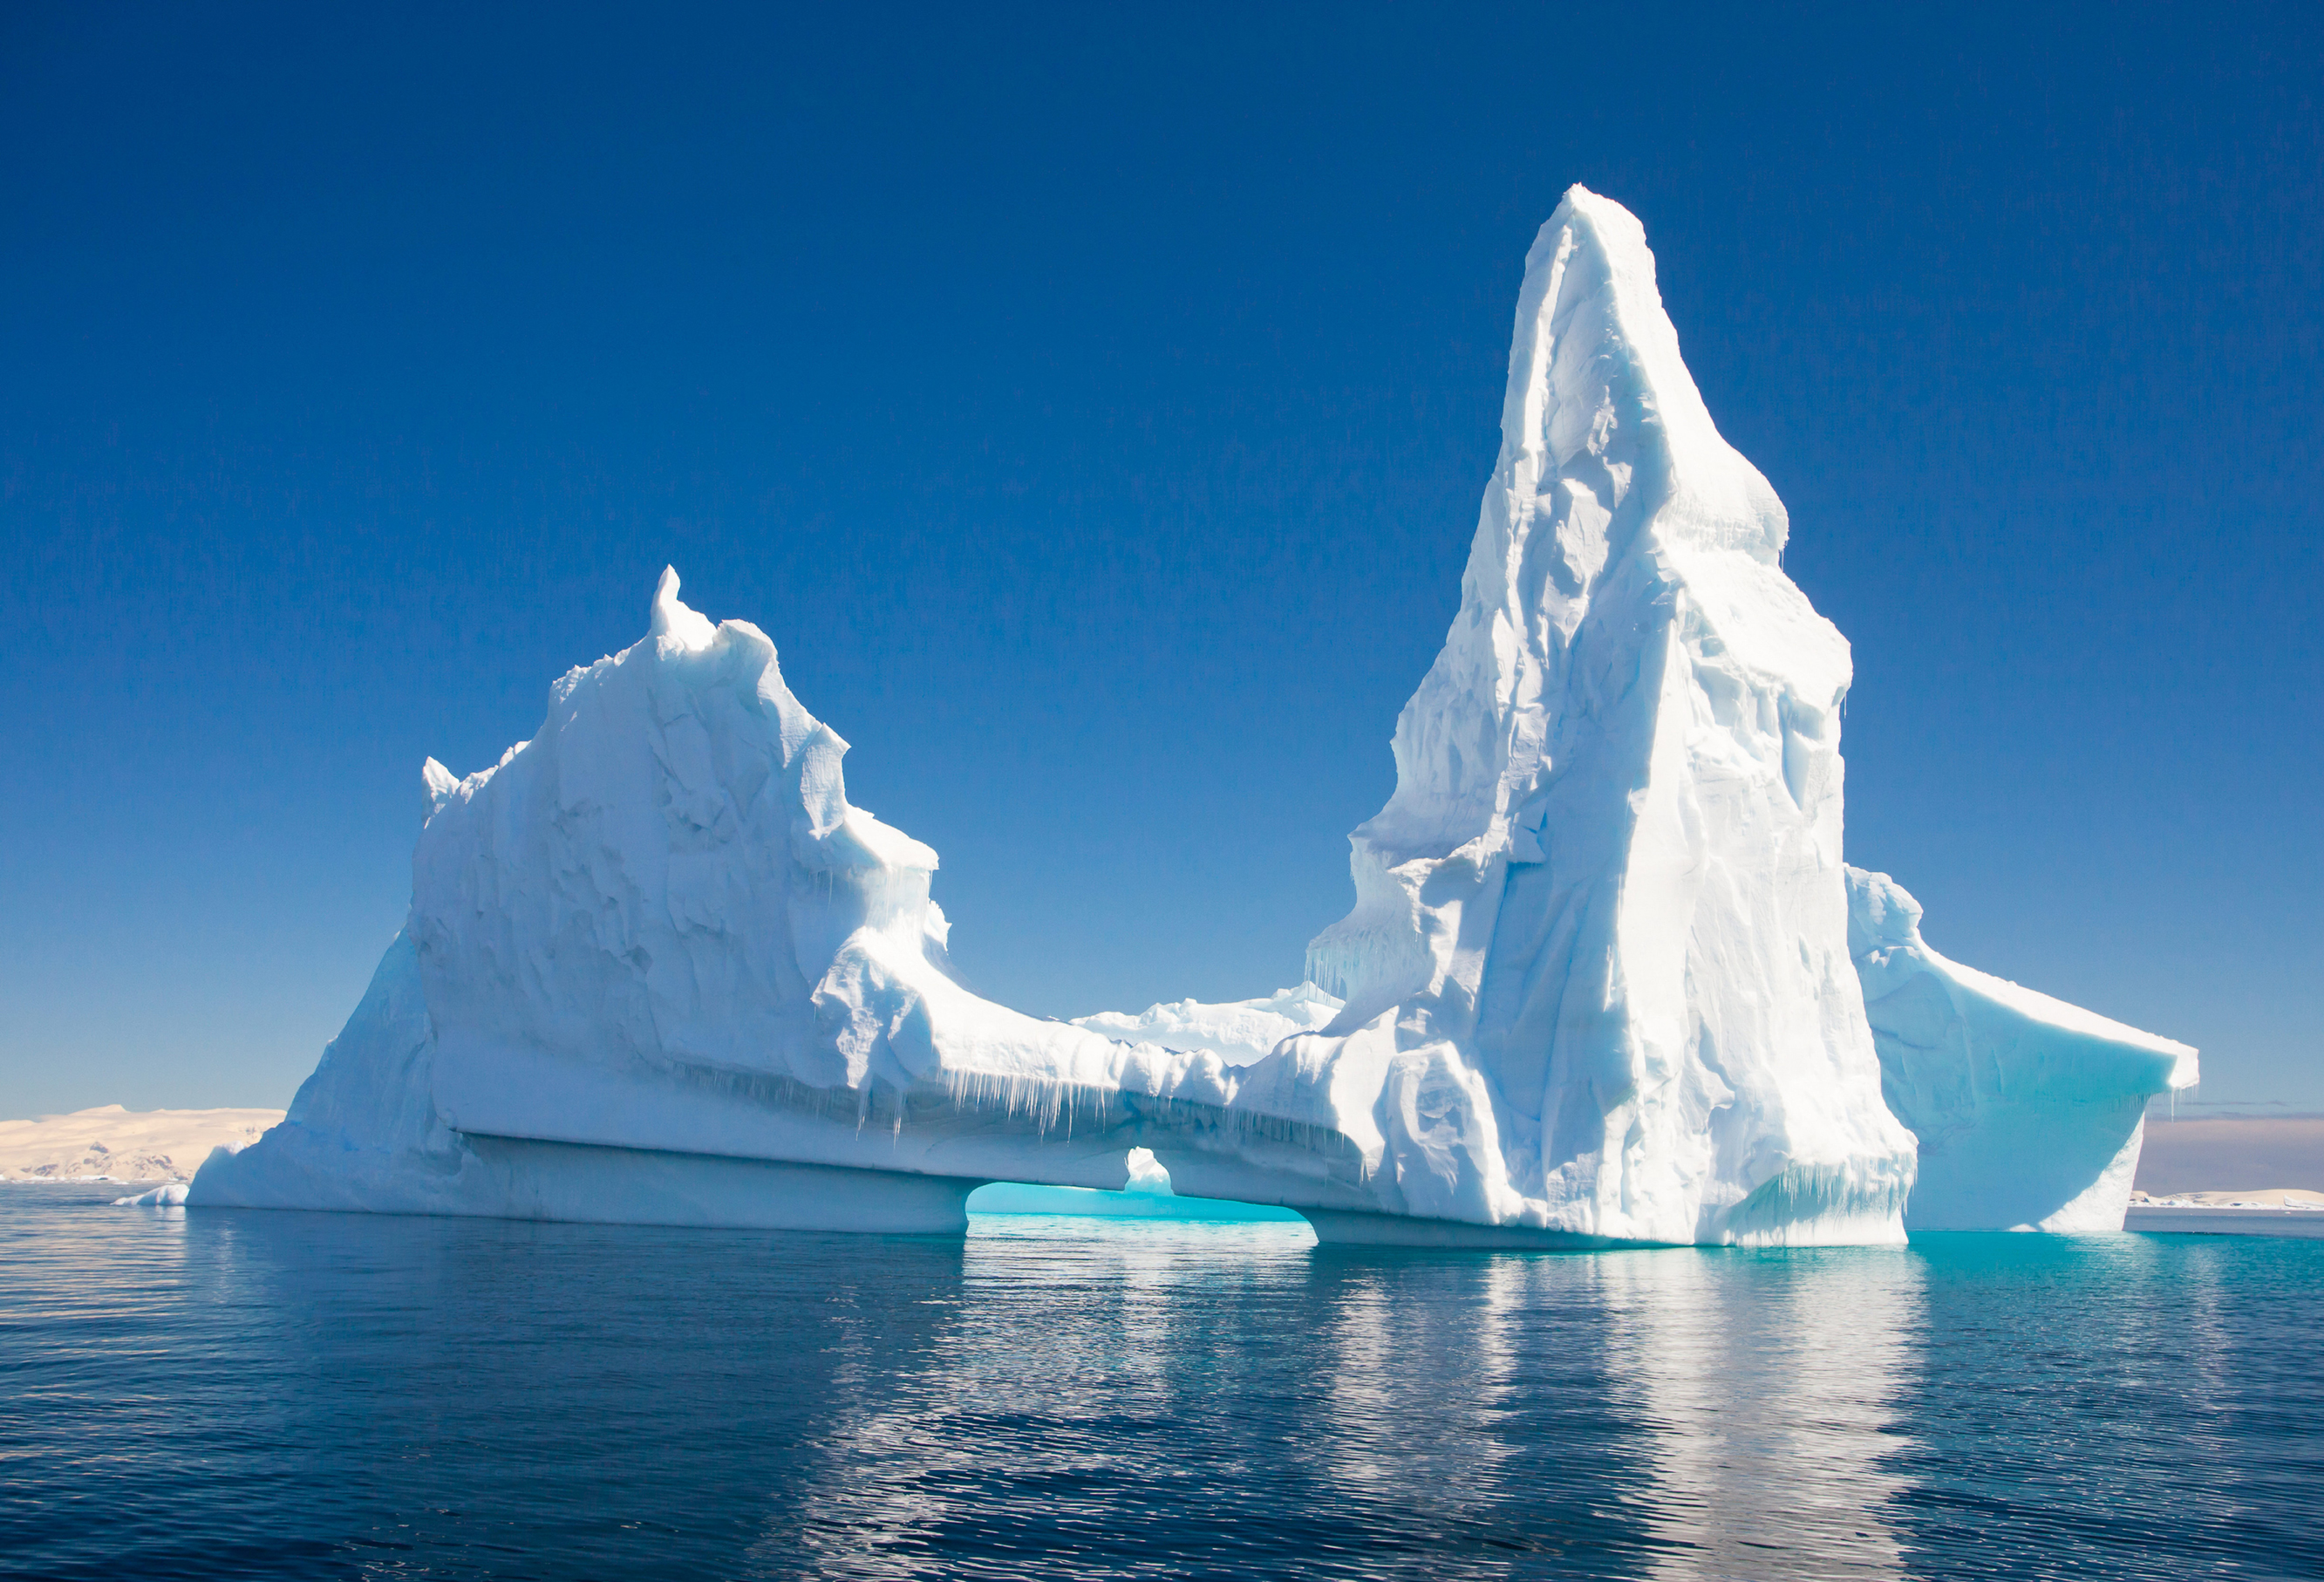 ОАЭ планирует буксировать к своим берегам айсберги для восстановления экобаланса в регионе